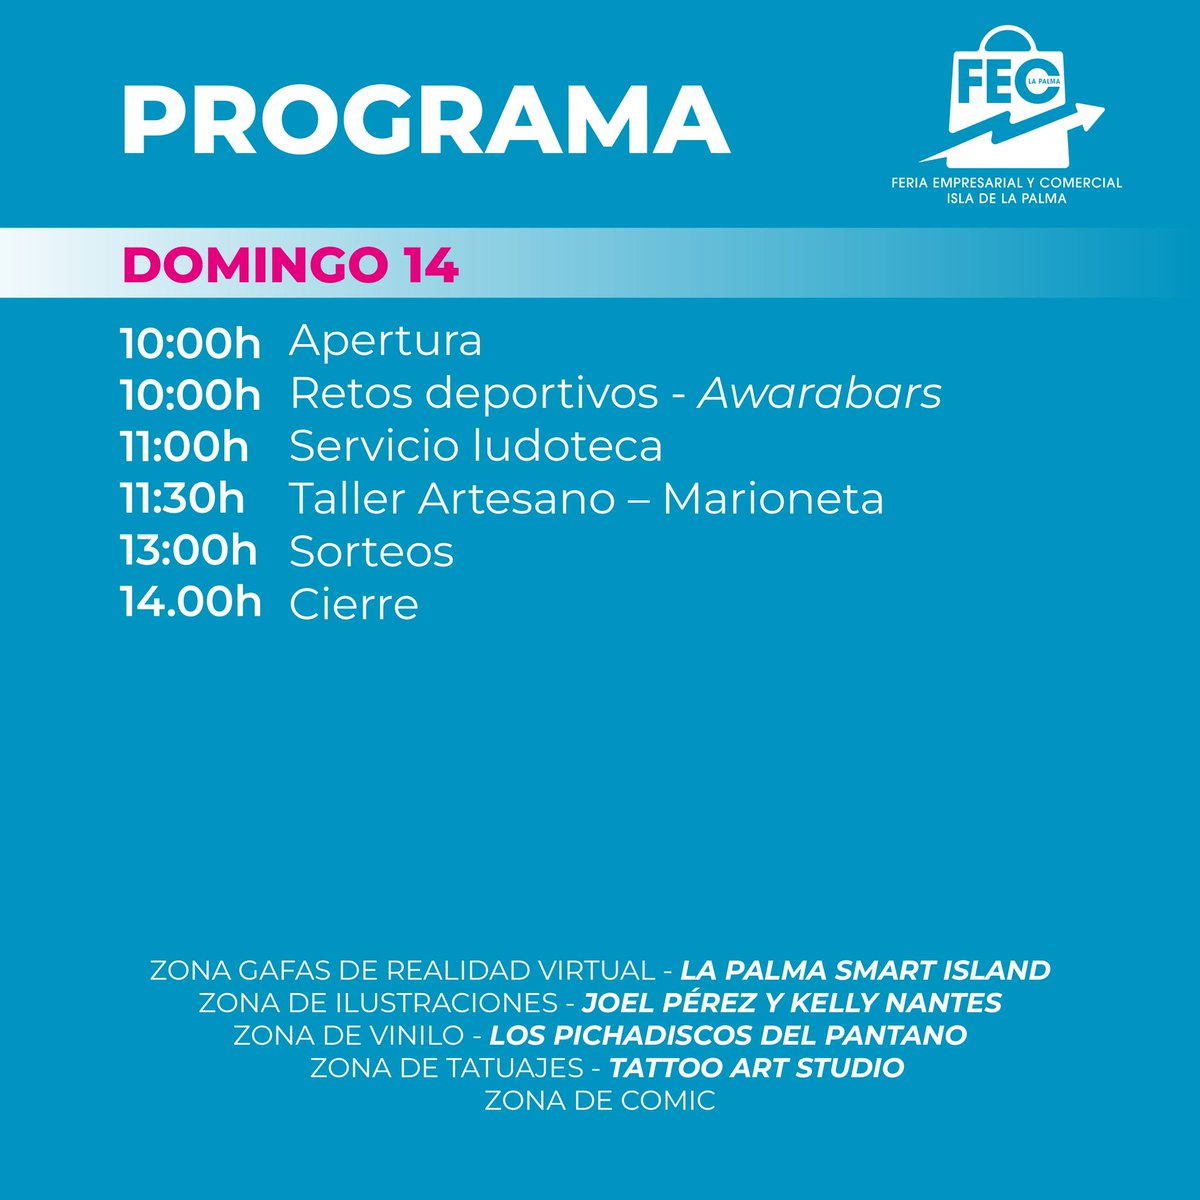 Feria Empresarial y Comercial de La Palma
Programa para mañana
#LaPalma #reservabiosfera #lapalmabiosfera 
@CabLaPalma @sodepal @aridane_org